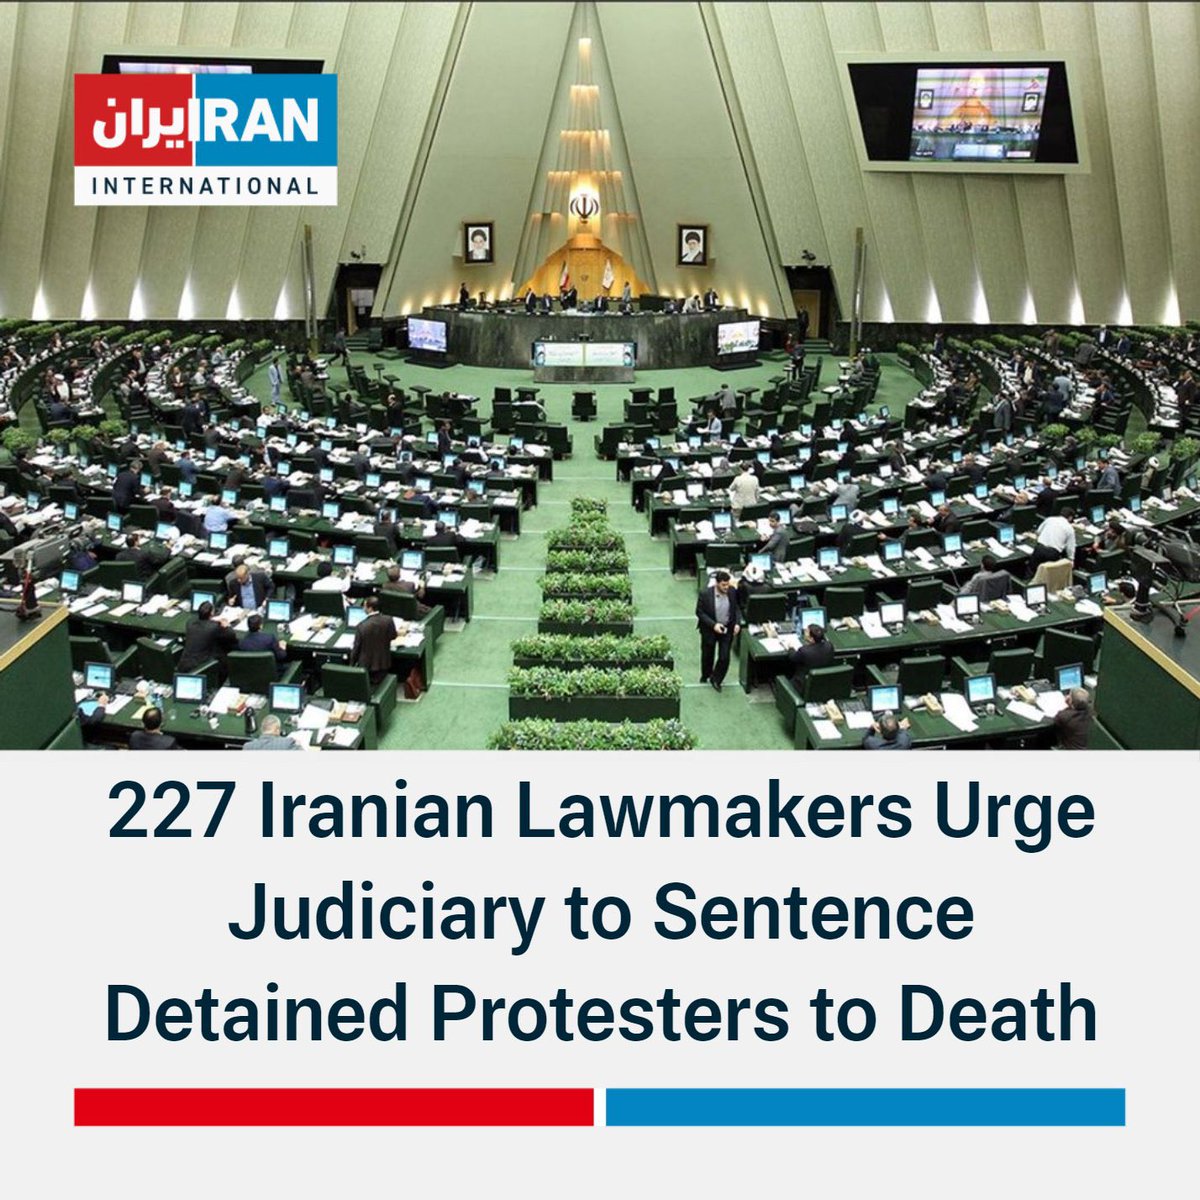 Das iranische Parlament ebnet 14.000 Hinrichtungen den Weg. Wo bleibt der Aufschrei? Warum ist das heute nicht die dominierende Schlagzeile der Zeitungen weltweit? #FreeThemAll #IranRevolution #JinaMahsaAmini